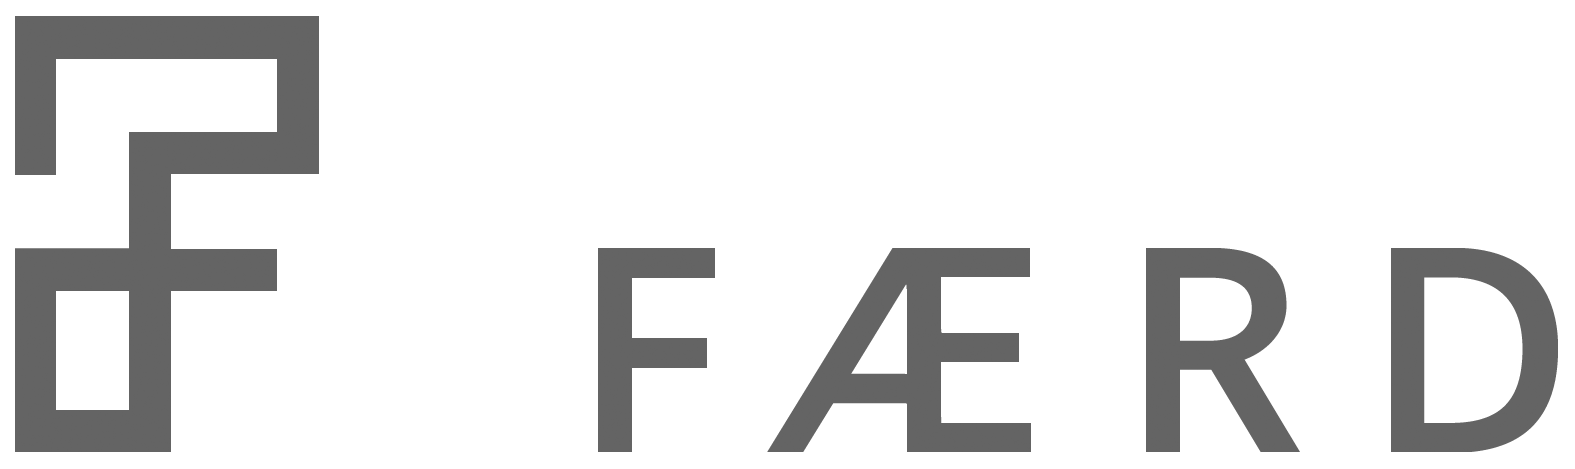 Færd logo